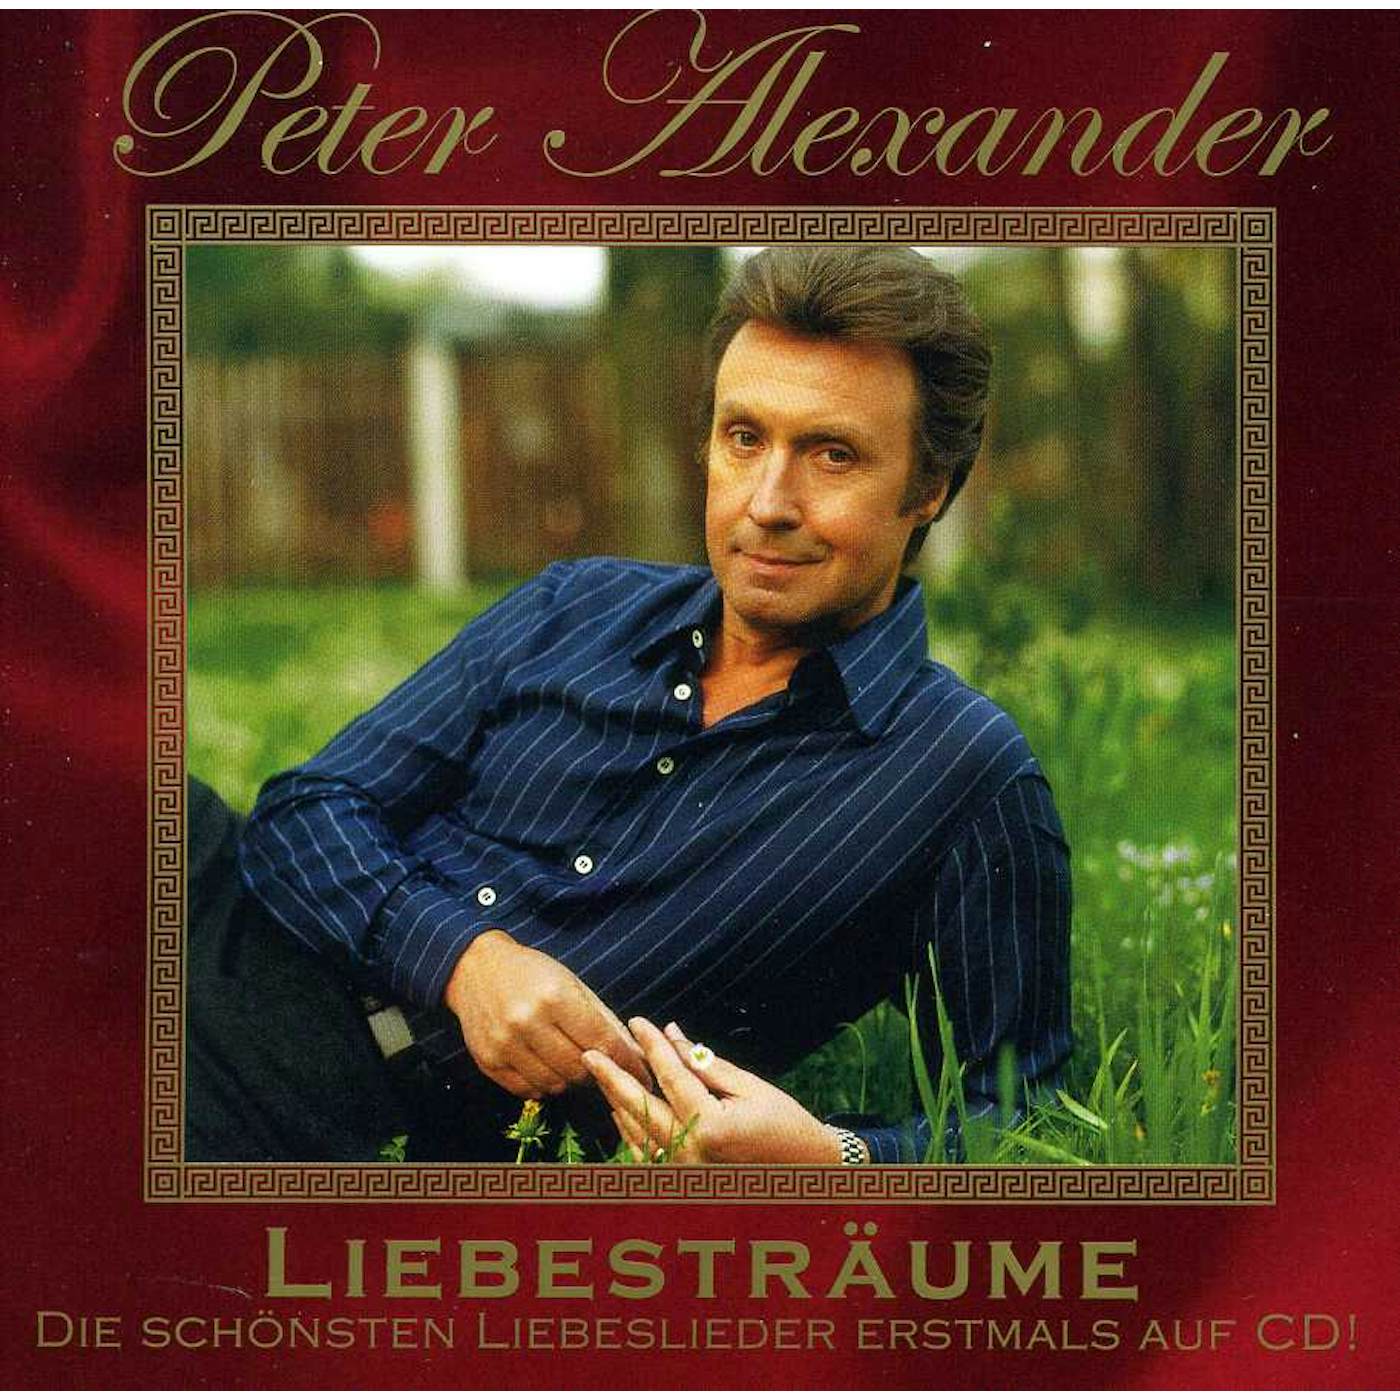 Peter Alexander LIEBESTRAUME CD